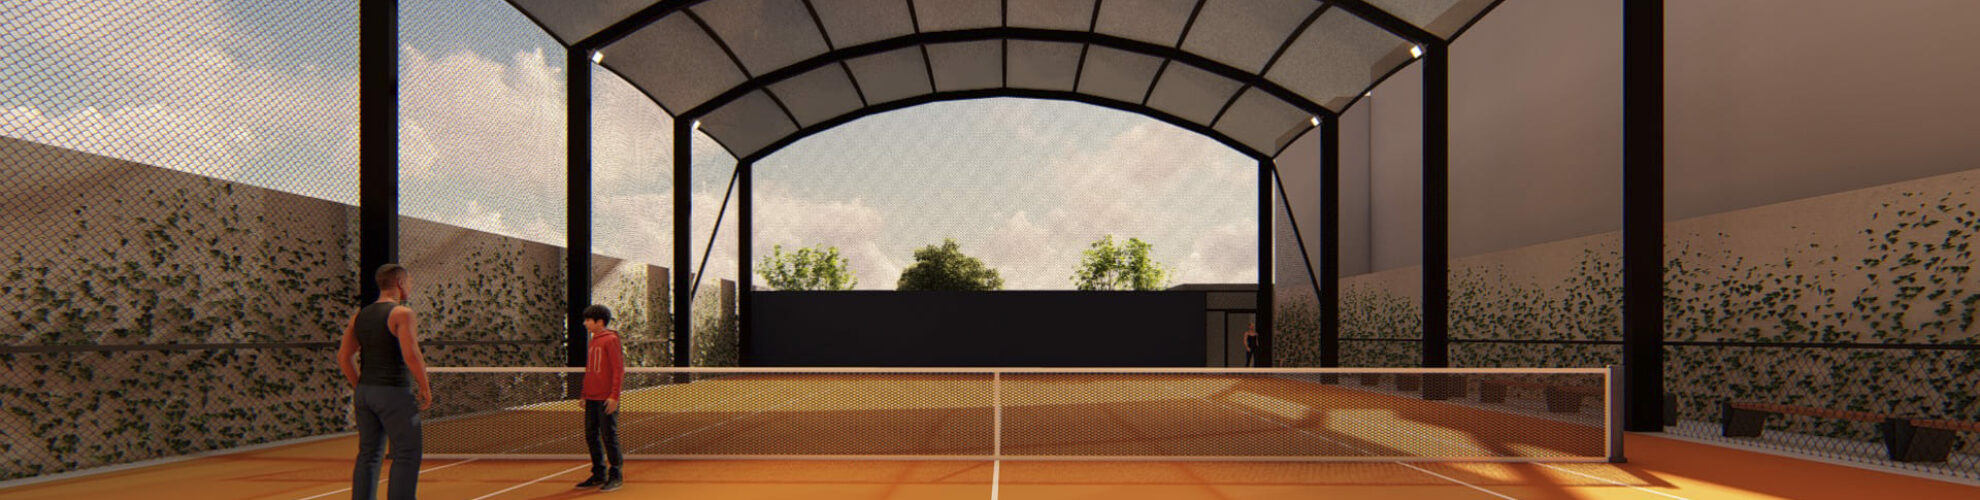 Academia-Tenis-0015